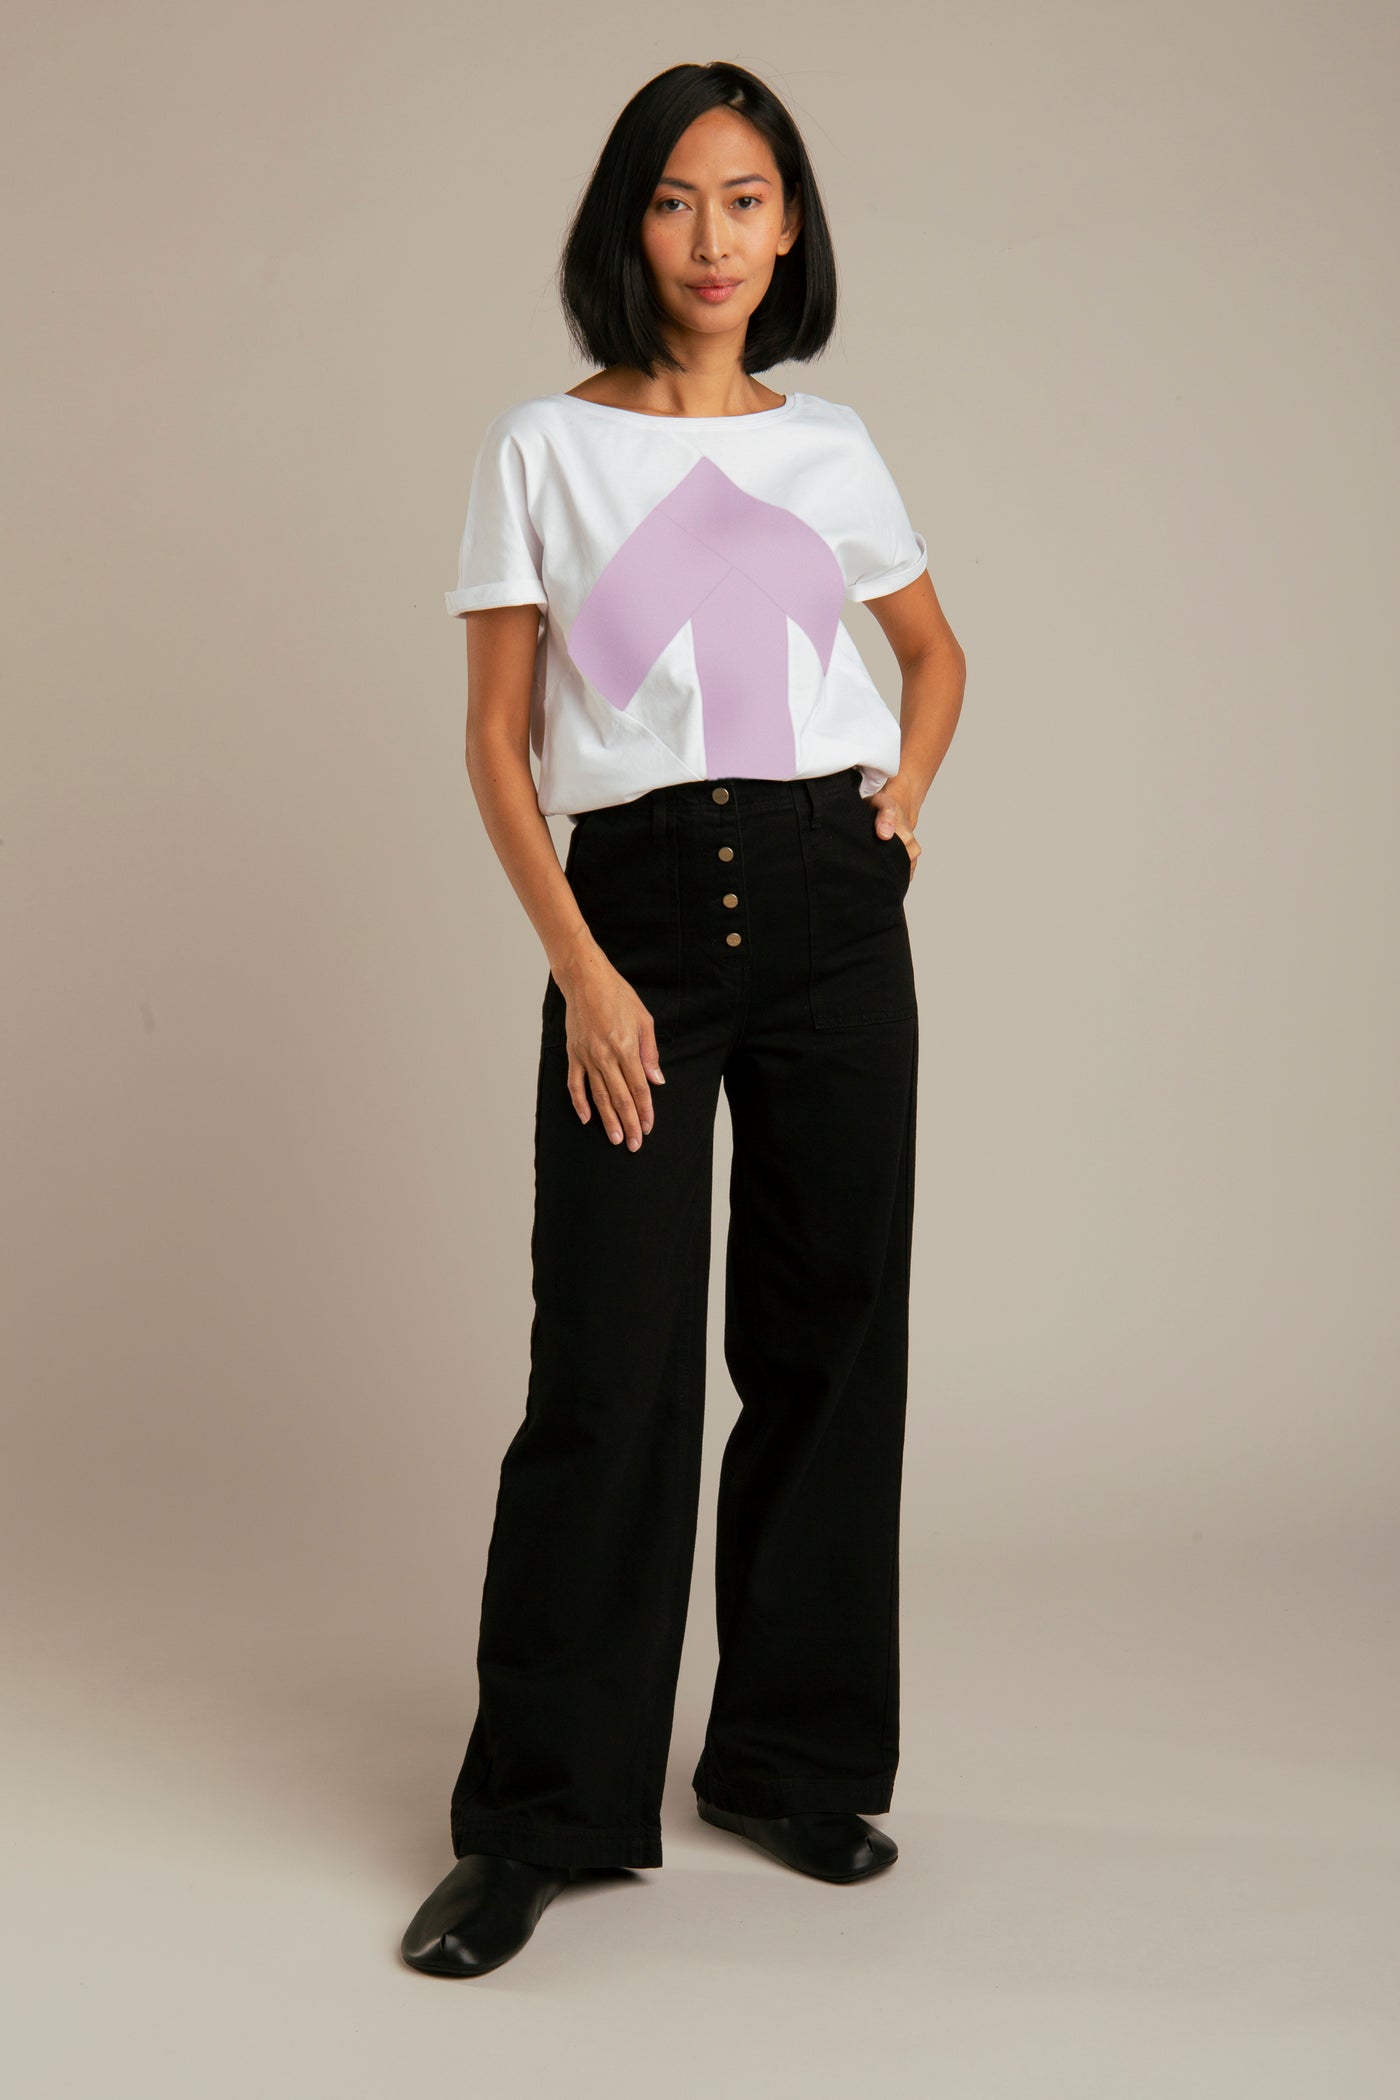 Up-shirt for women | White, lavender